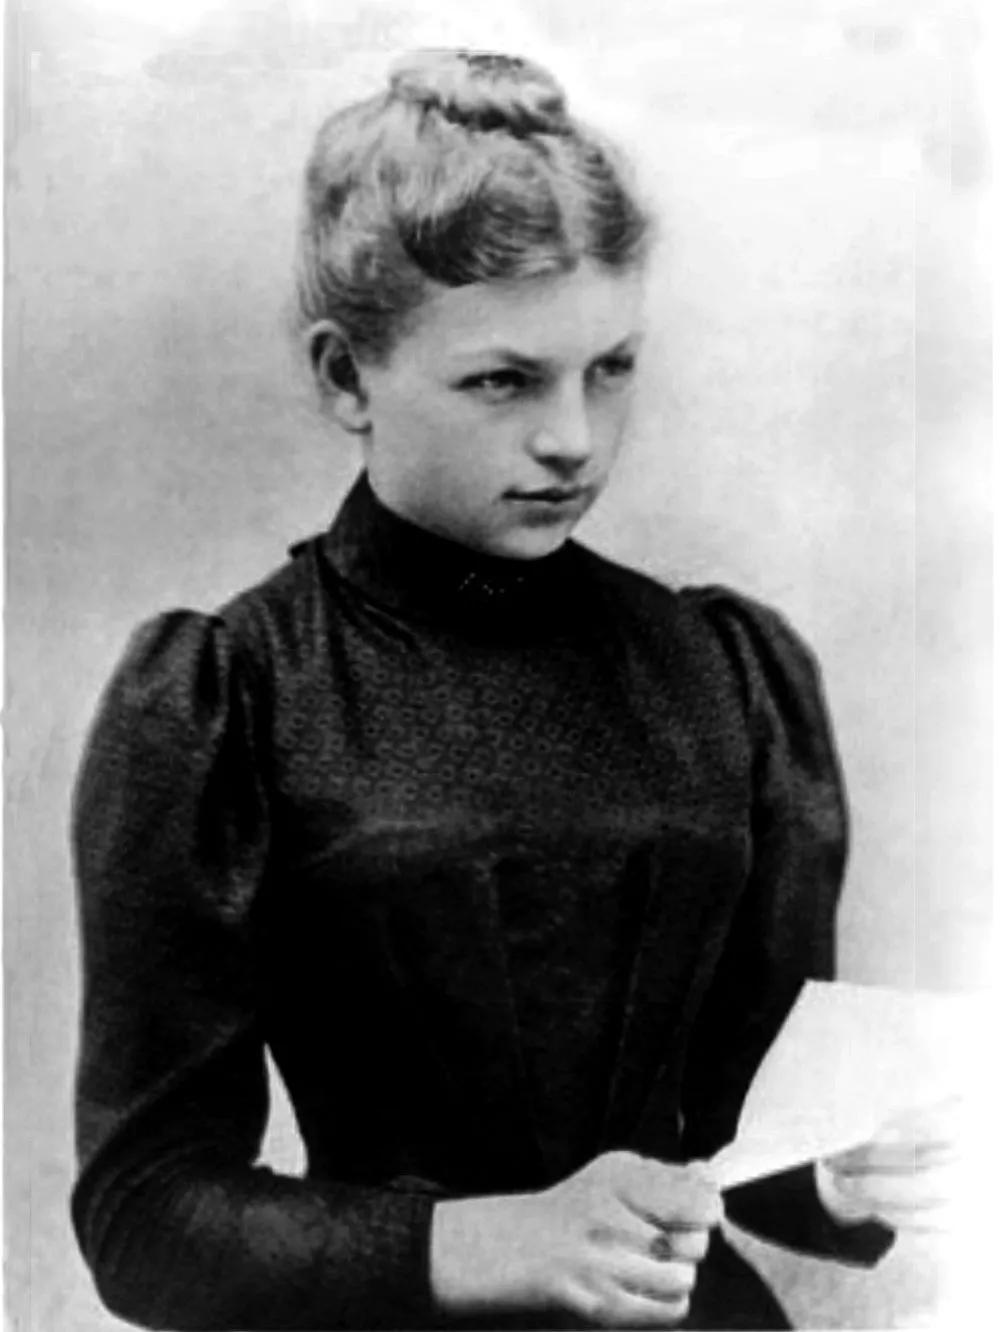 Clara Immerwahr, química alemana de ascendencia judía, fue la primera esposa de Haber. Se suicidó en 1915, tras el primer ataque con gas de la Primera Guerra Mundial.